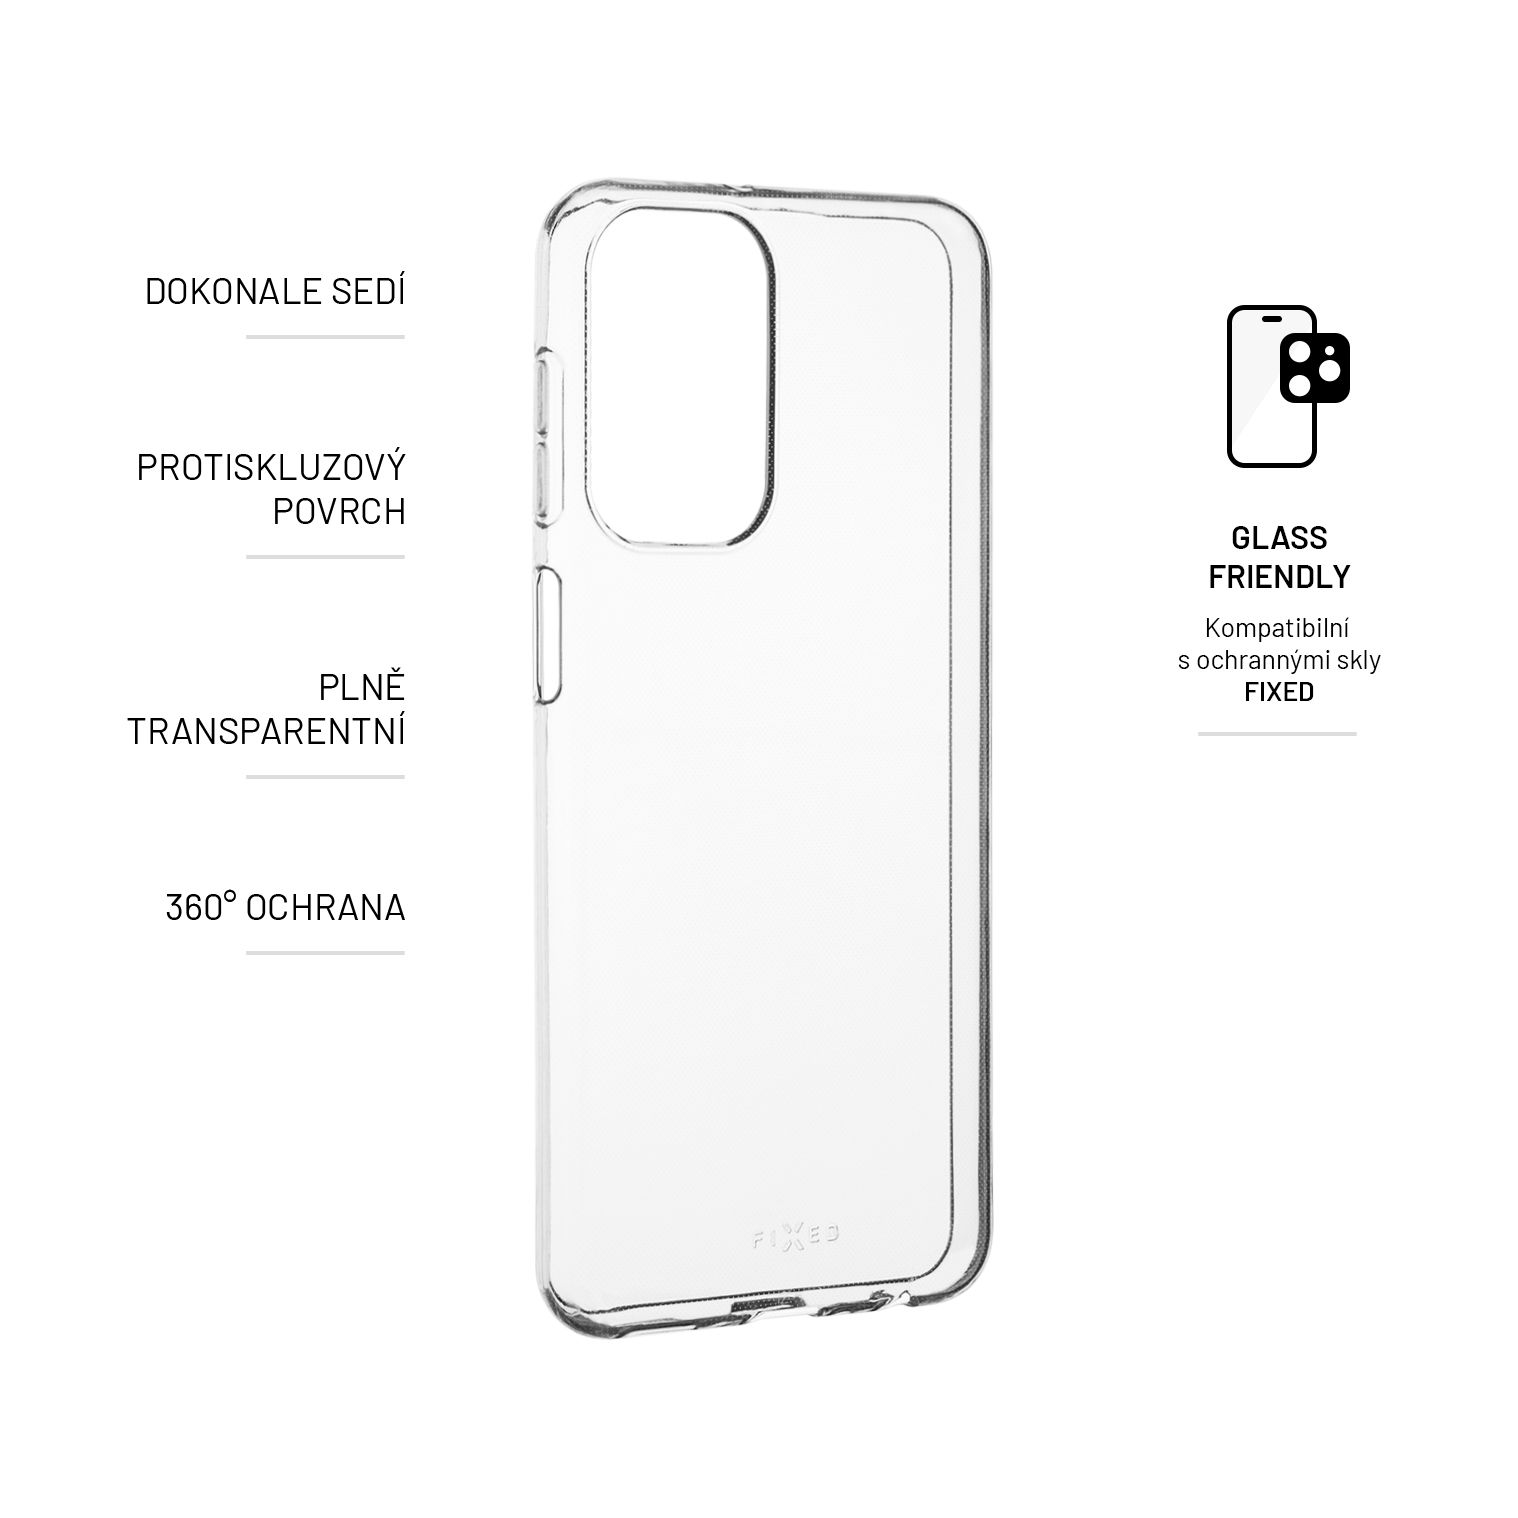 A23, Cover, Full Samsung, FIXED FIXTCC-934, Transparent Galaxy